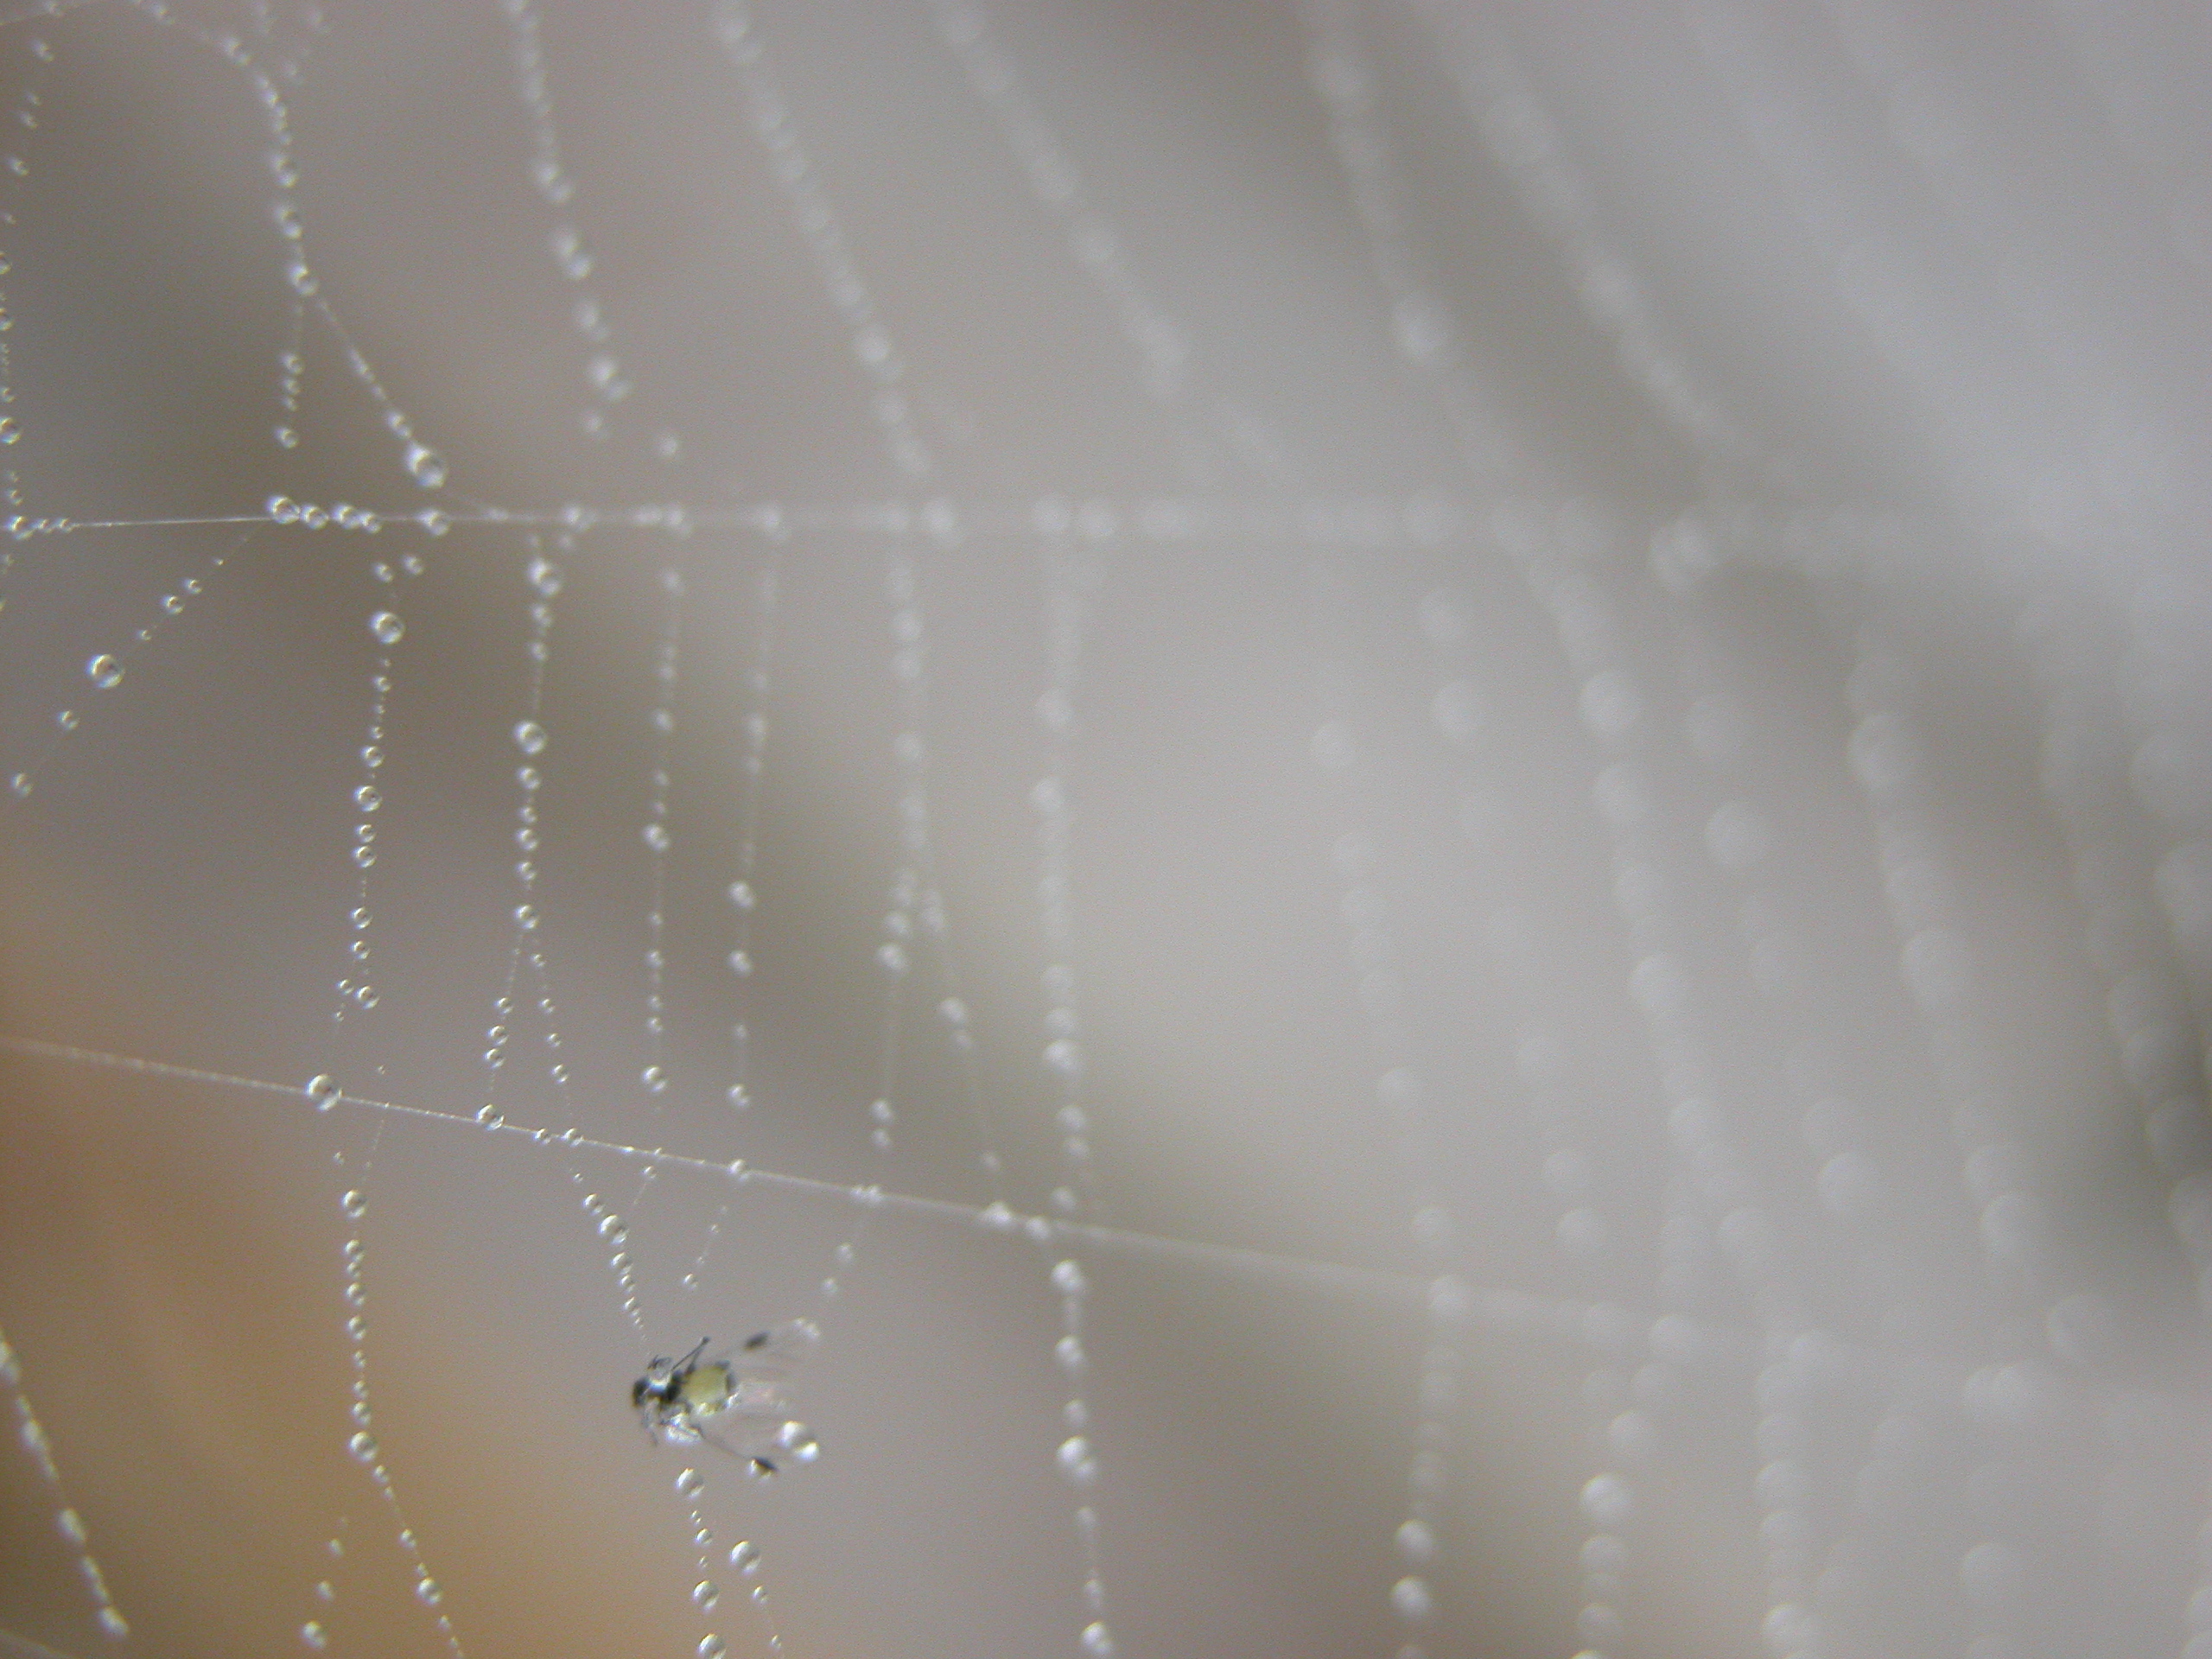 spider silk moist condense drops web